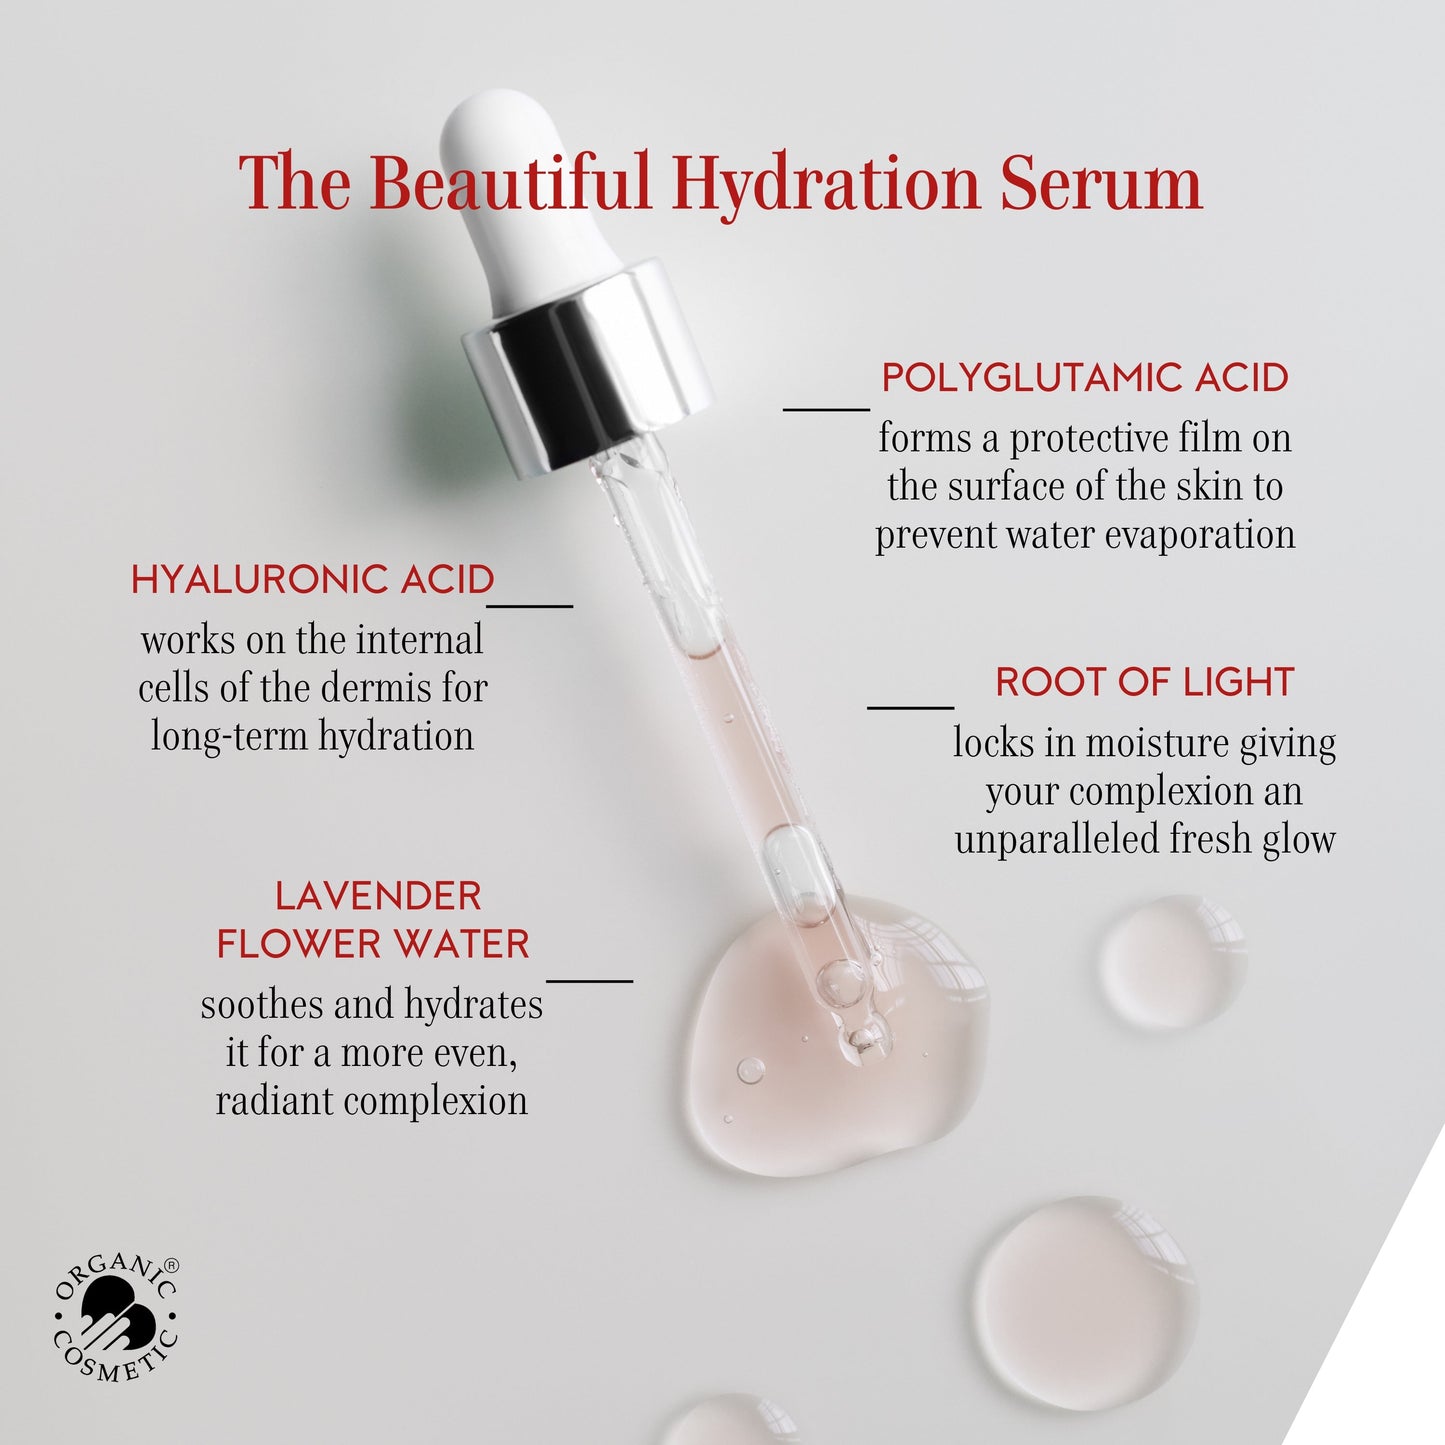 The Beautiful Hydration Serum